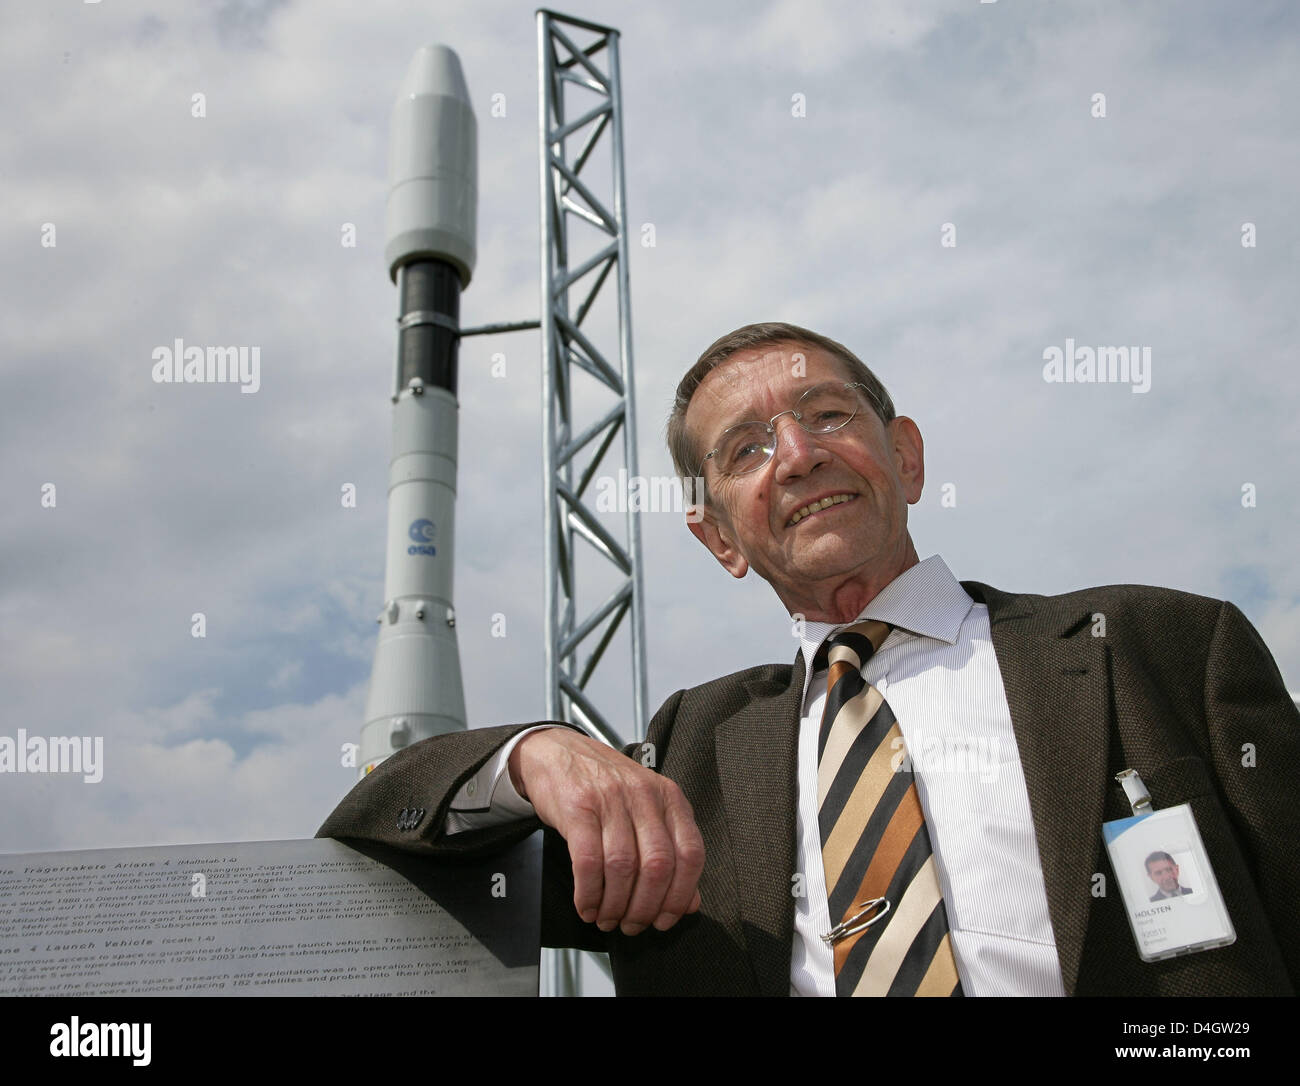 Horst Holsten, "père d'Ariane", sourit devant l'nouvellement inauguré 1:4 modèle de l'ESA (Agence Spatiale Européenne) 'Ariane 4 fusée' sur l'entreprise composés de 'Astrium Ltd." à Brême, Allemagne, le 8 juillet 2008. De 1988 à 2003 des fusées Ariane 4 satellites transportés 182 dans l'espace en 116 vols. Space Company EADS Astrium a investi près de quatre millions d'euros pour le nouvel espace de stockage Banque D'Images